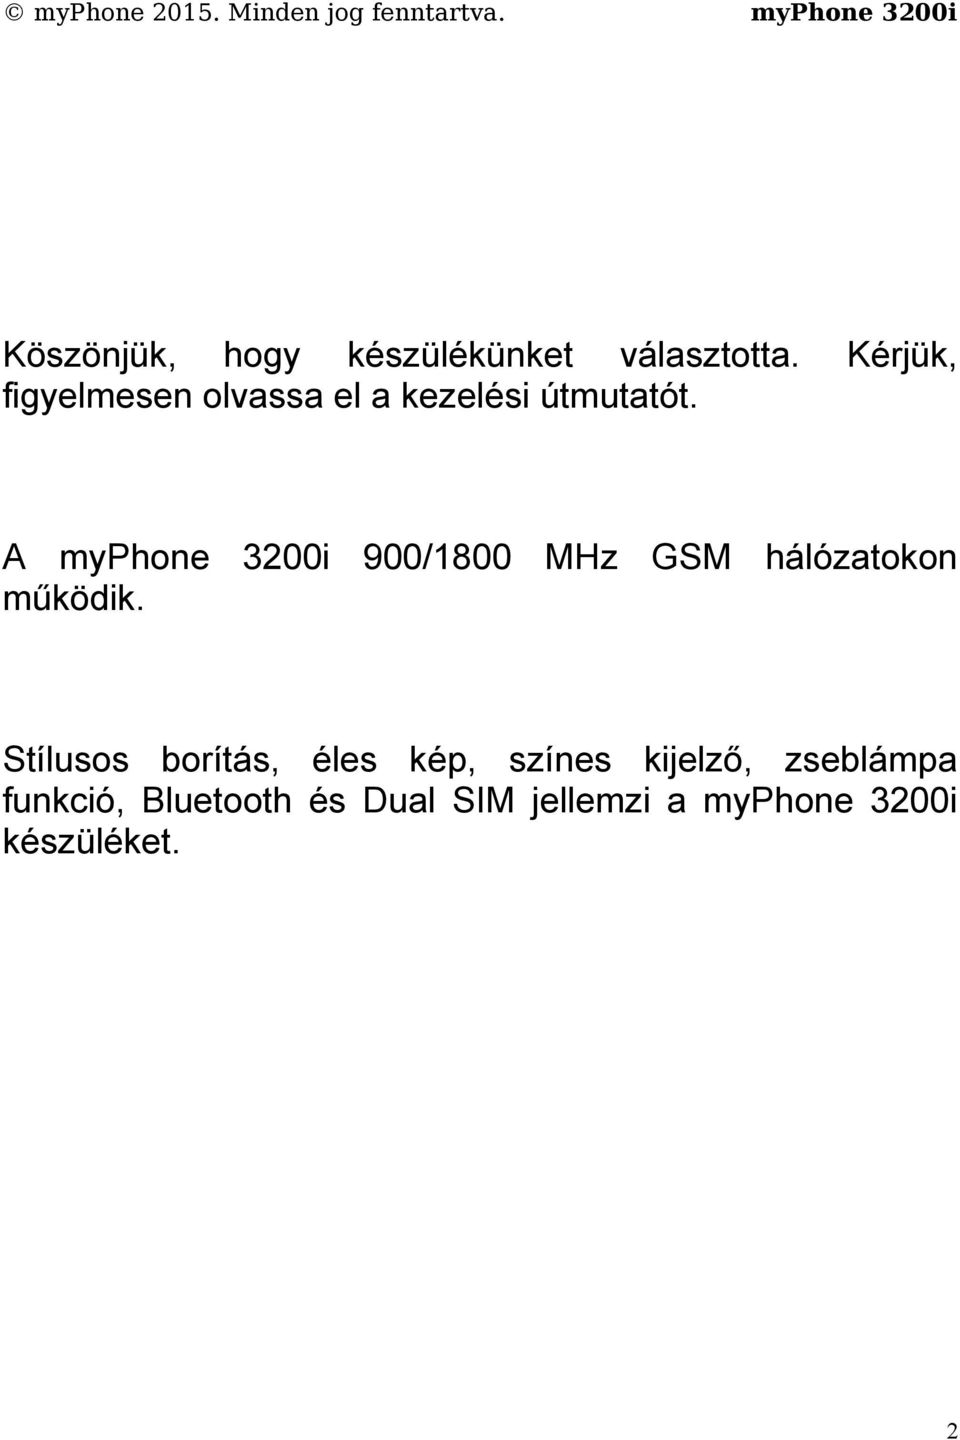 A myphone 3200i 900/1800 MHz GSM hálózatokon működik.